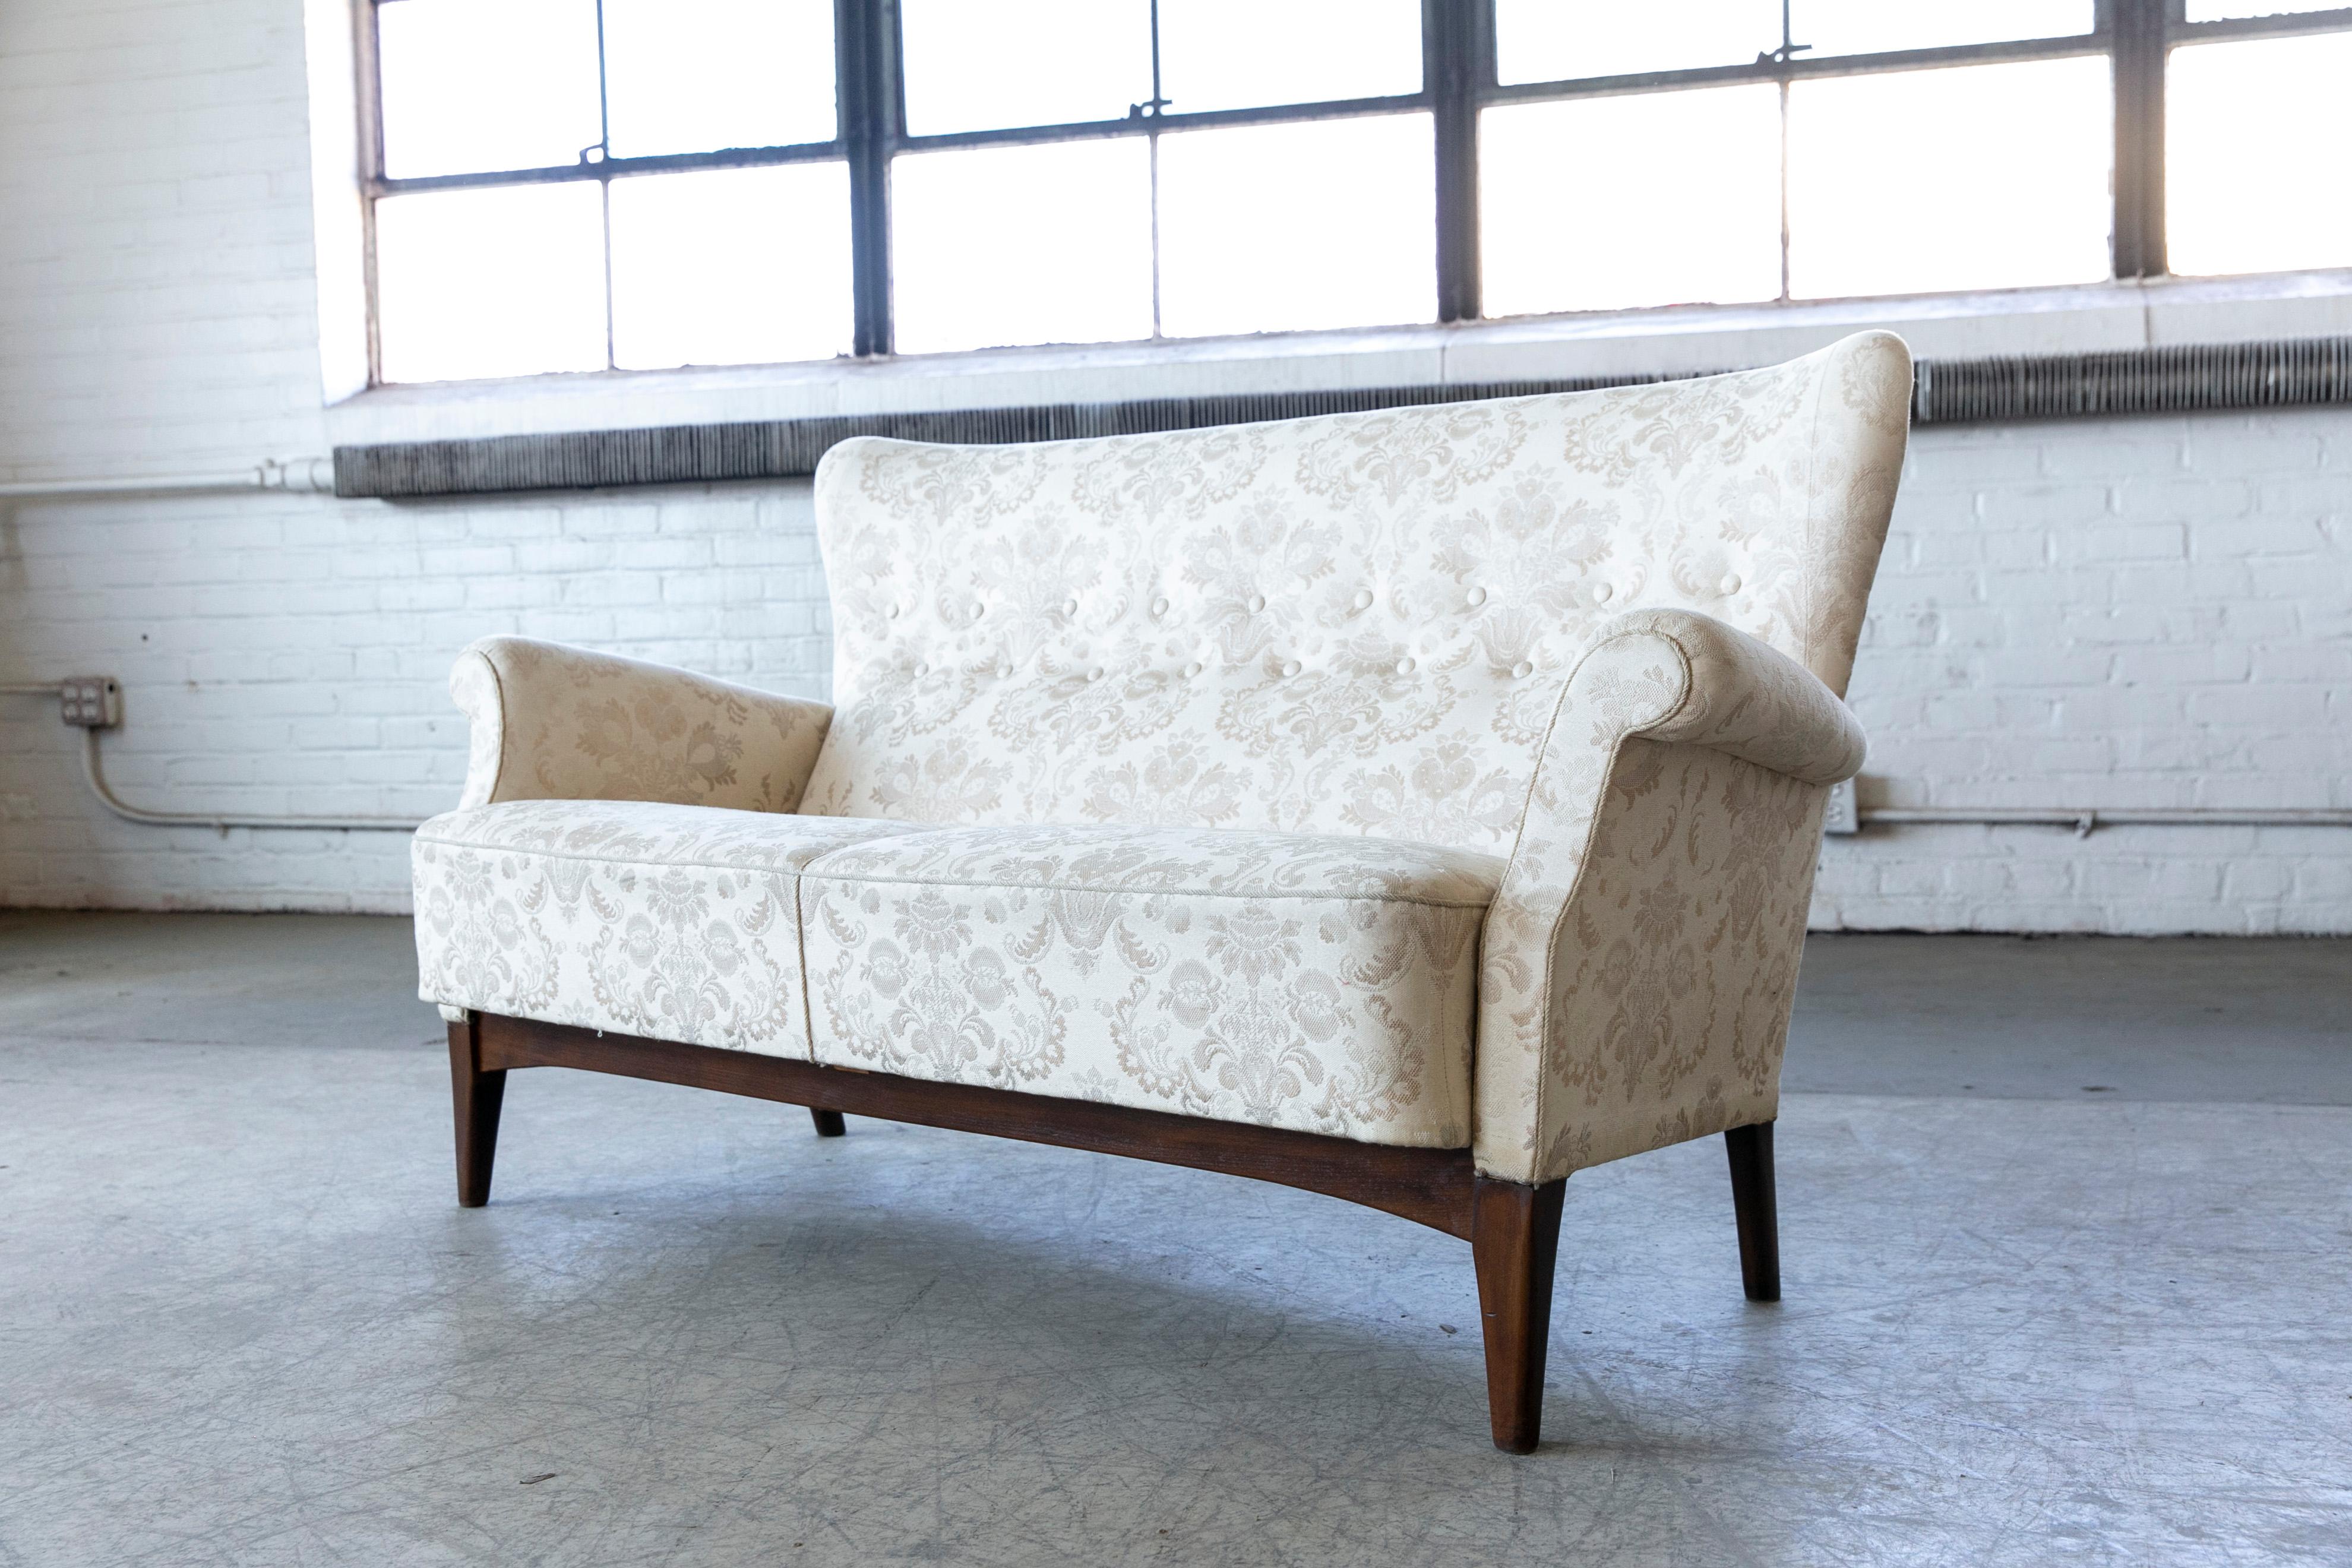 Sehr elegantes Sofa oder Zweisitzer, Modell 8112, hergestellt von Fritz Hansen Anfang bis Mitte der 1950er Jahre in Kopenhagen, Dänemark. Das Gestell ist ähnlich wie bei den Sesseln von Fritz Hansen aus den 1940er Jahren konstruiert, so dass er ohne